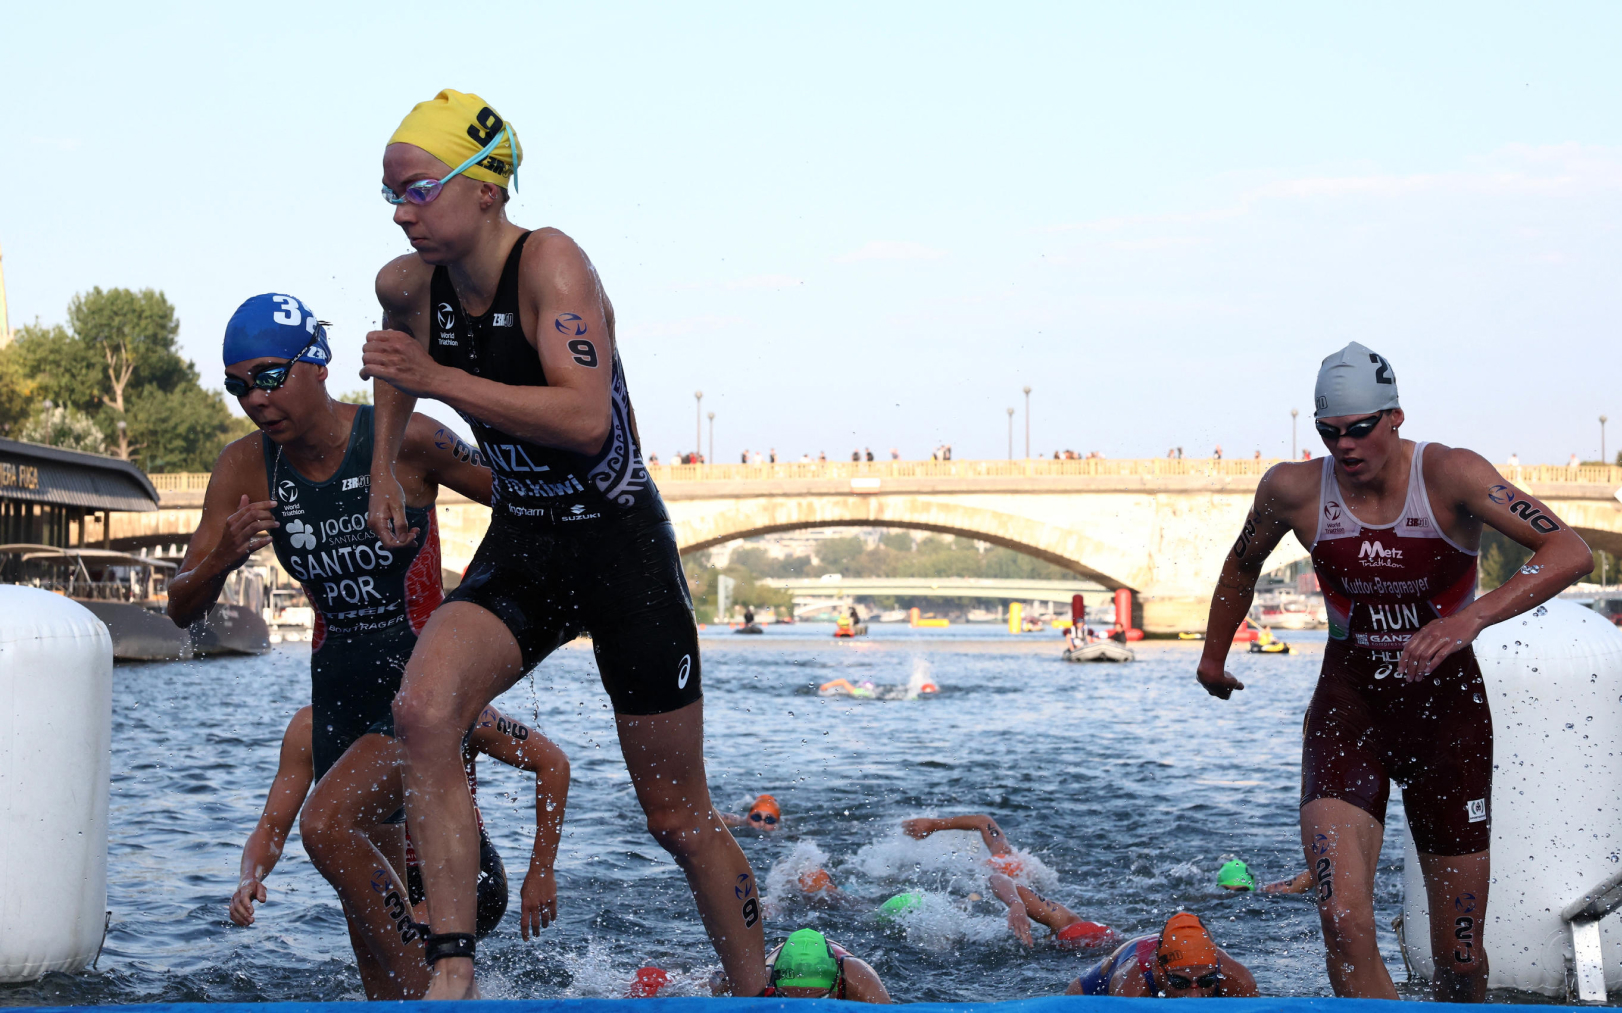 Une épreuve de natation a été menée dans la Seine en août dernier, pour préparer les JO de Paris 2024. AFP/Stephanie Lecoq